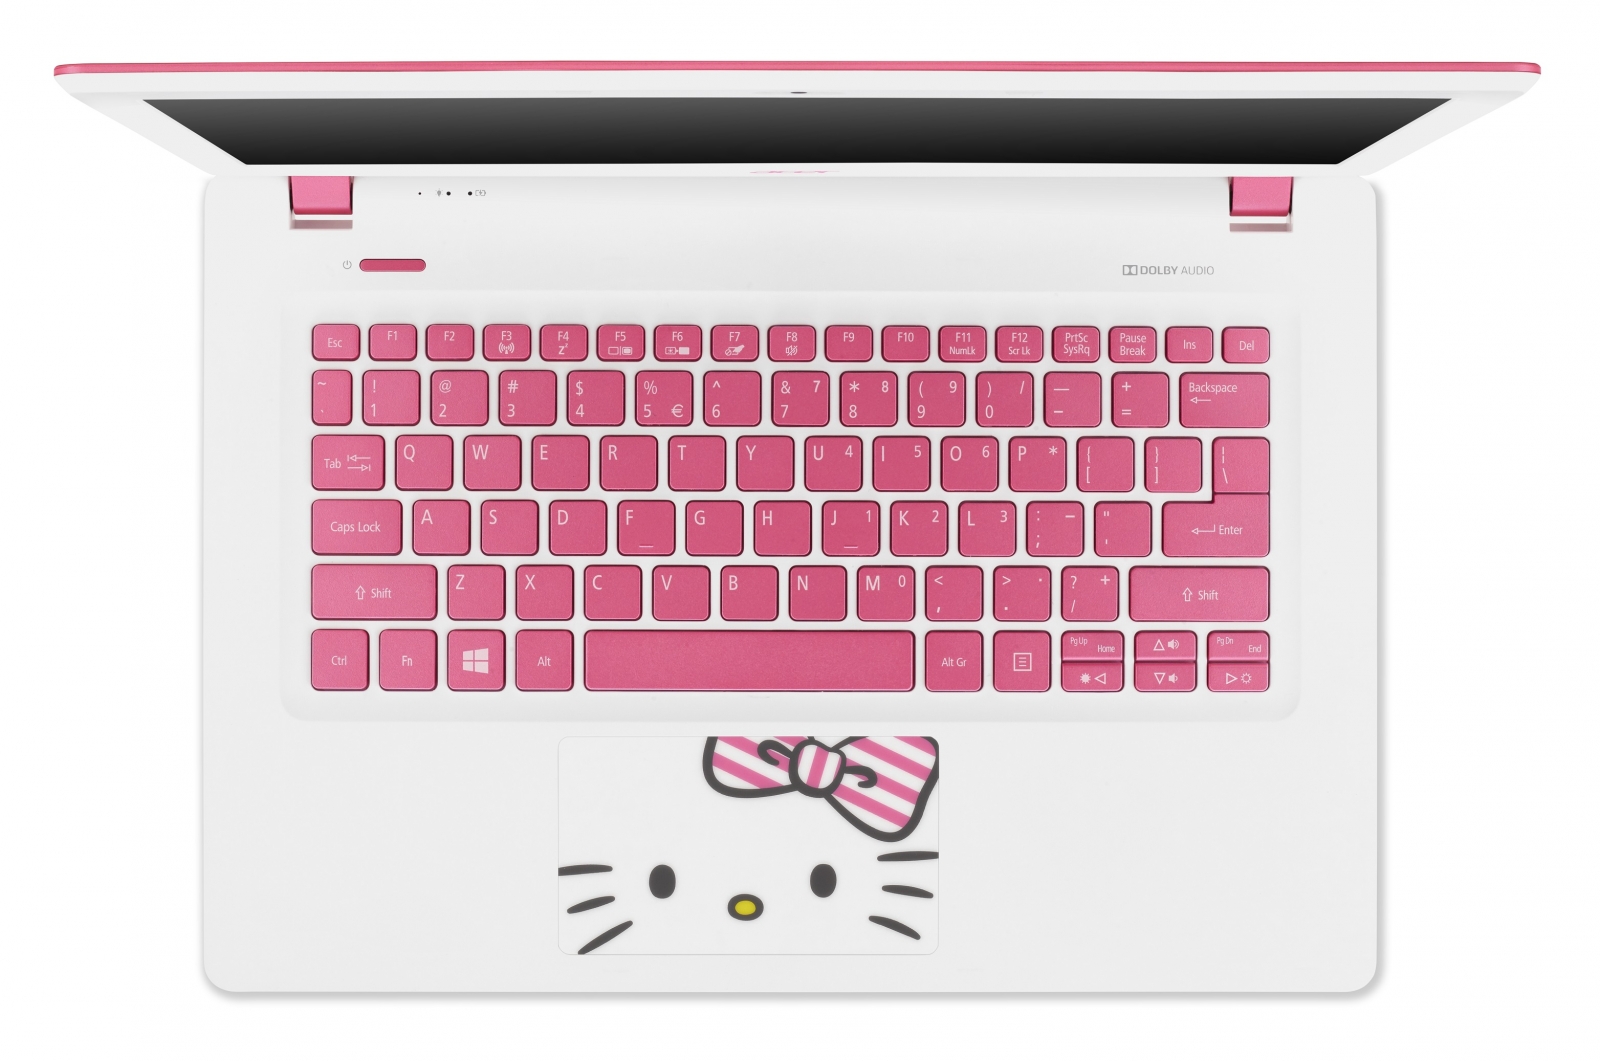 Acer Hello Kitty Laptop 